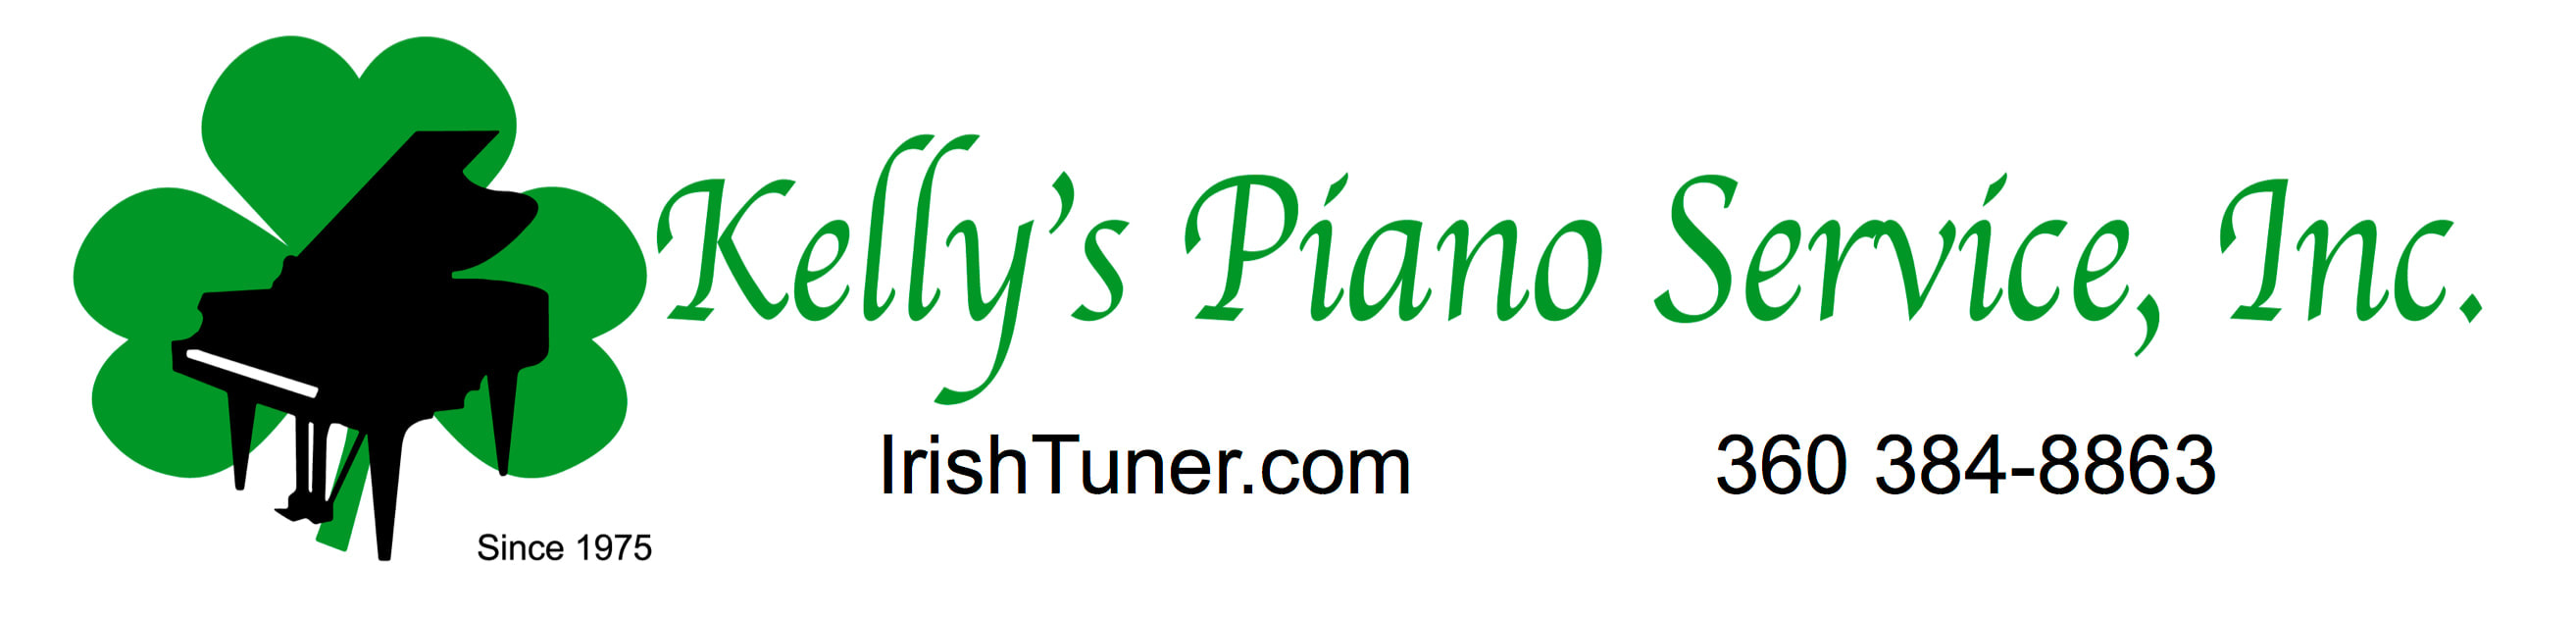 Kelly's Piano Service, Inc.
360-384-8863